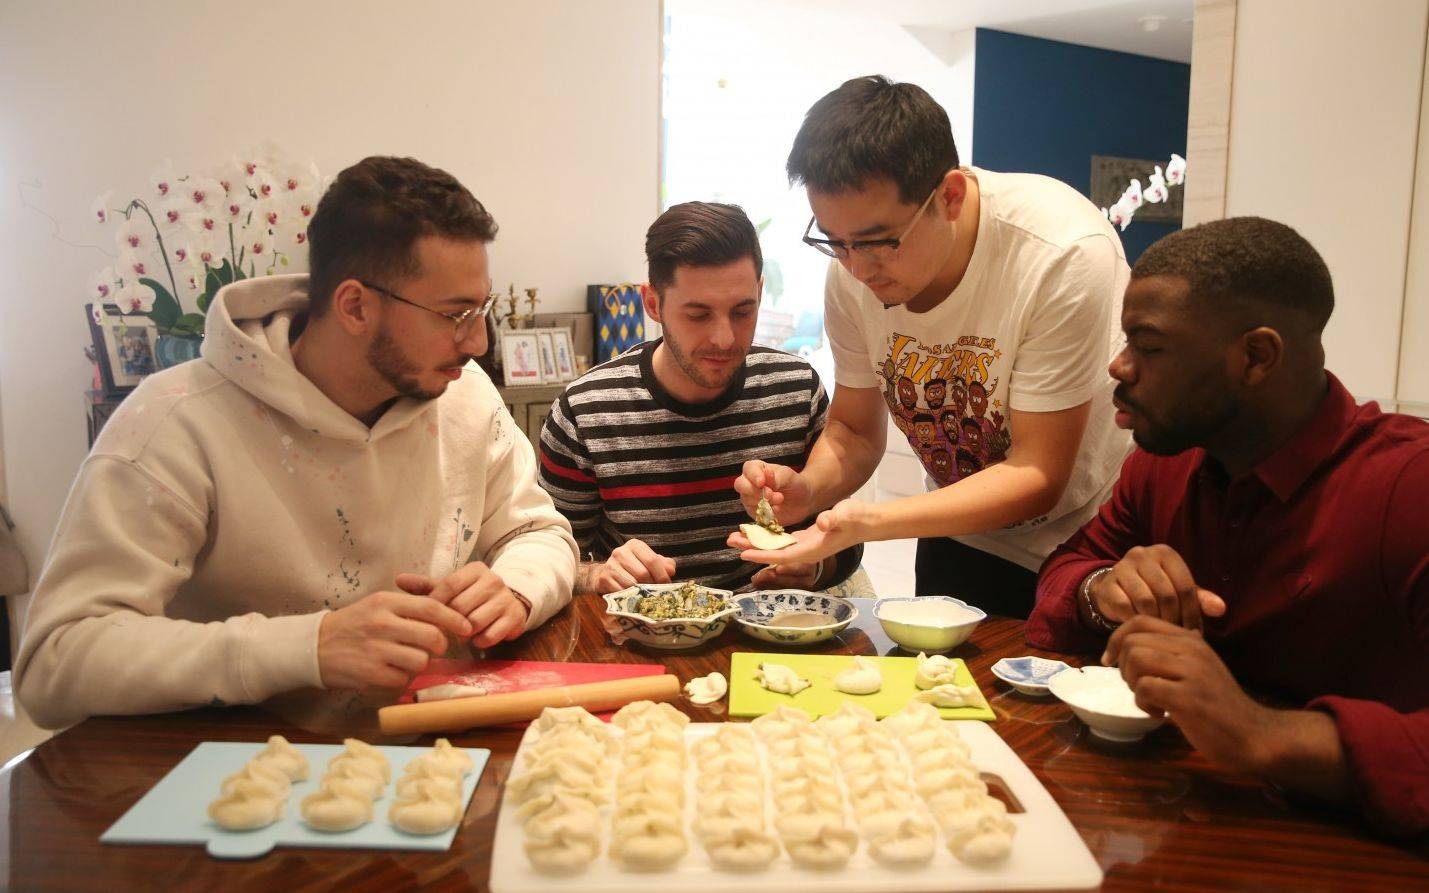 三个人对饺子,火锅,筷子都用得比较溜,他们认同中国人分享红包的文化